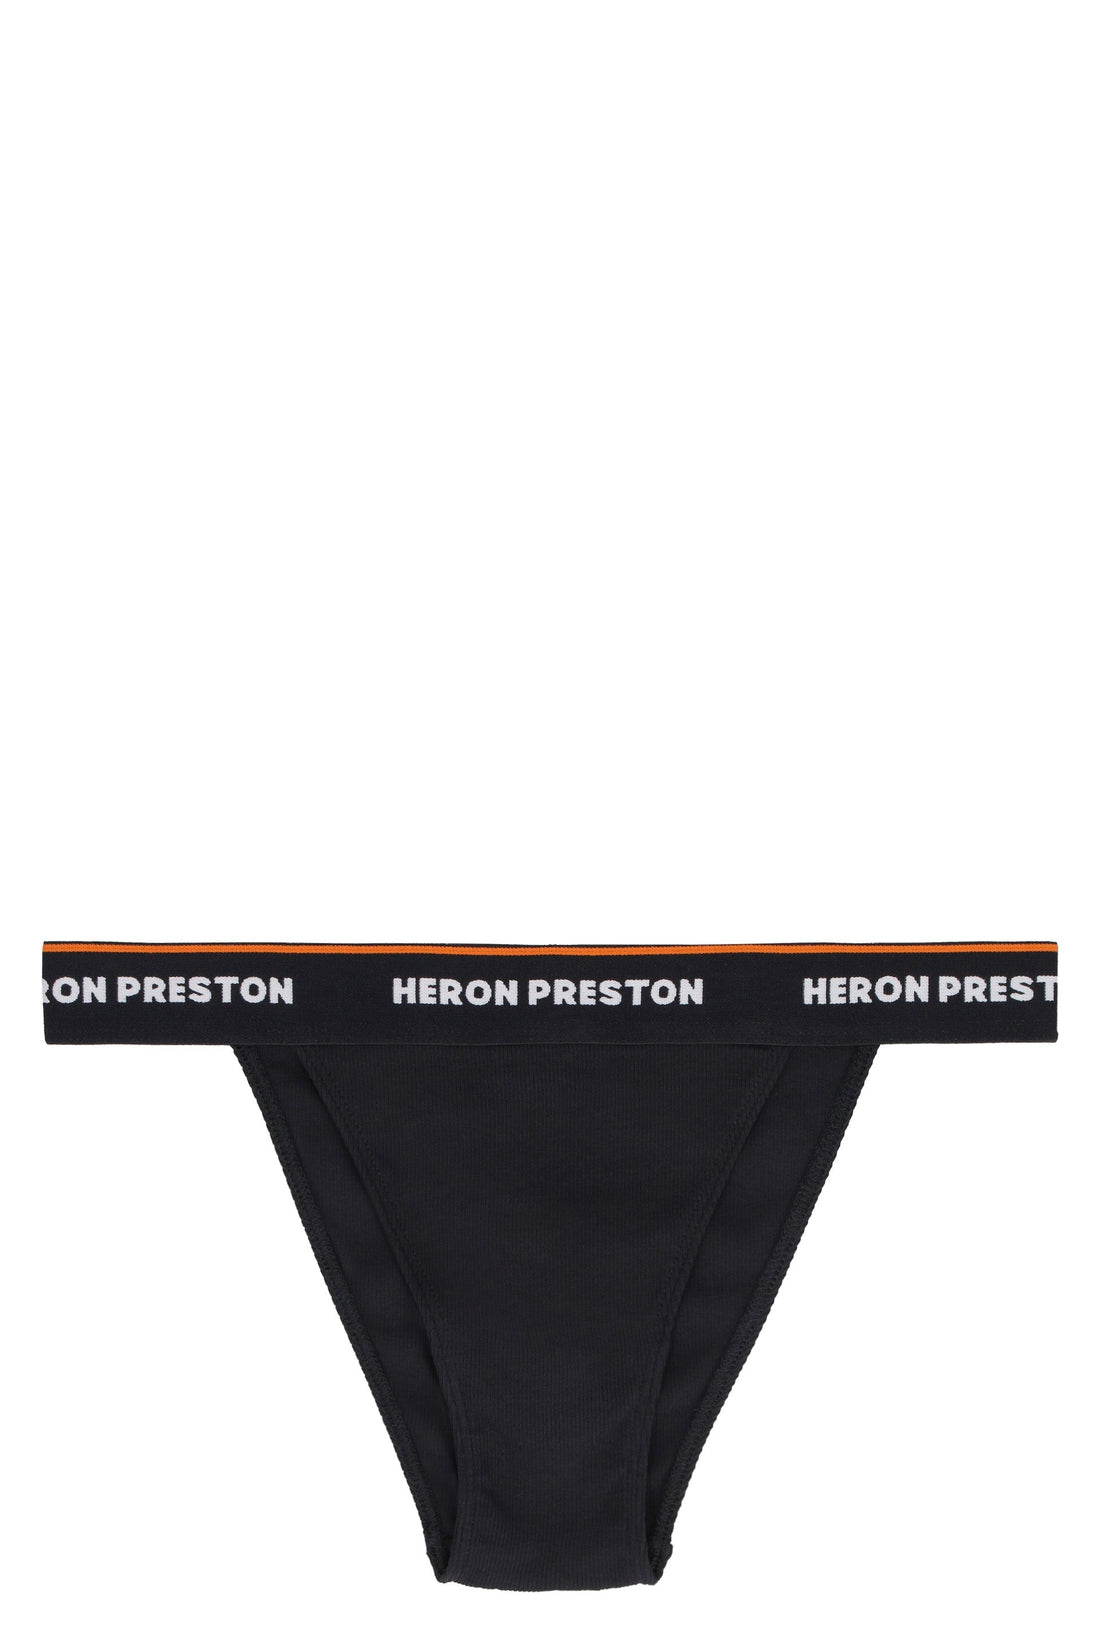 Хлопковые трусы на резинке с логотипом Heron Preston, черный